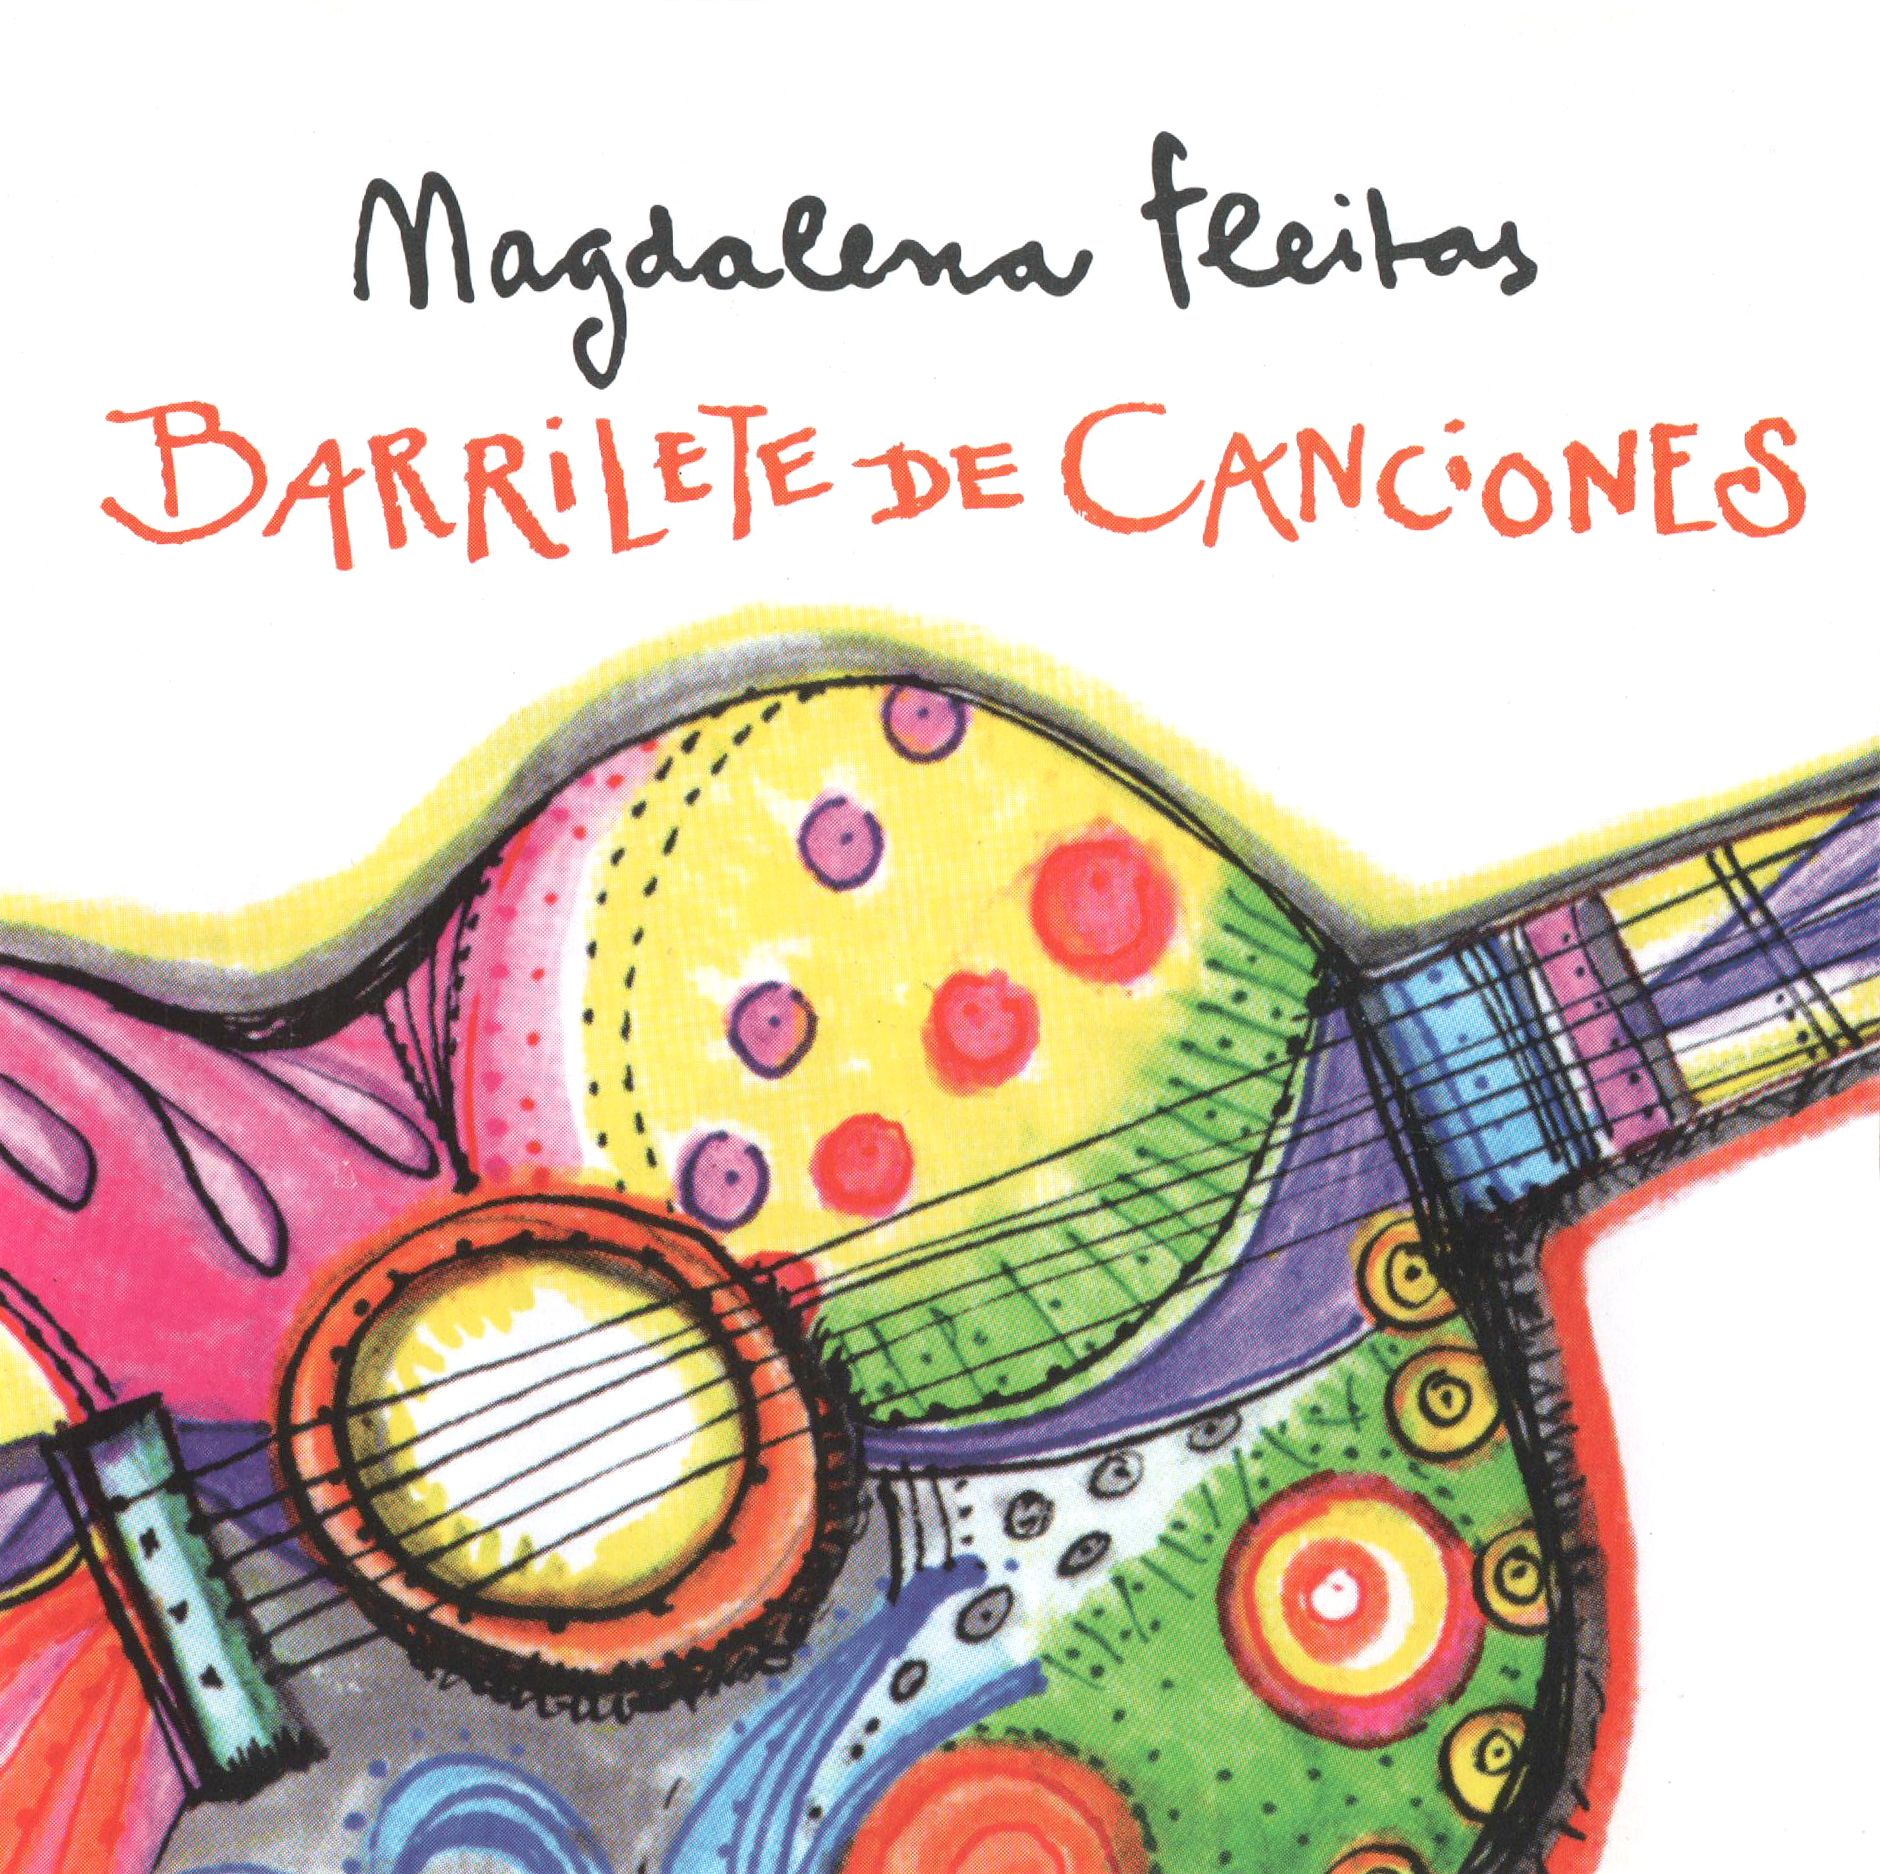 Barrilete de Canciones (2009) - Magdalena Fleitas